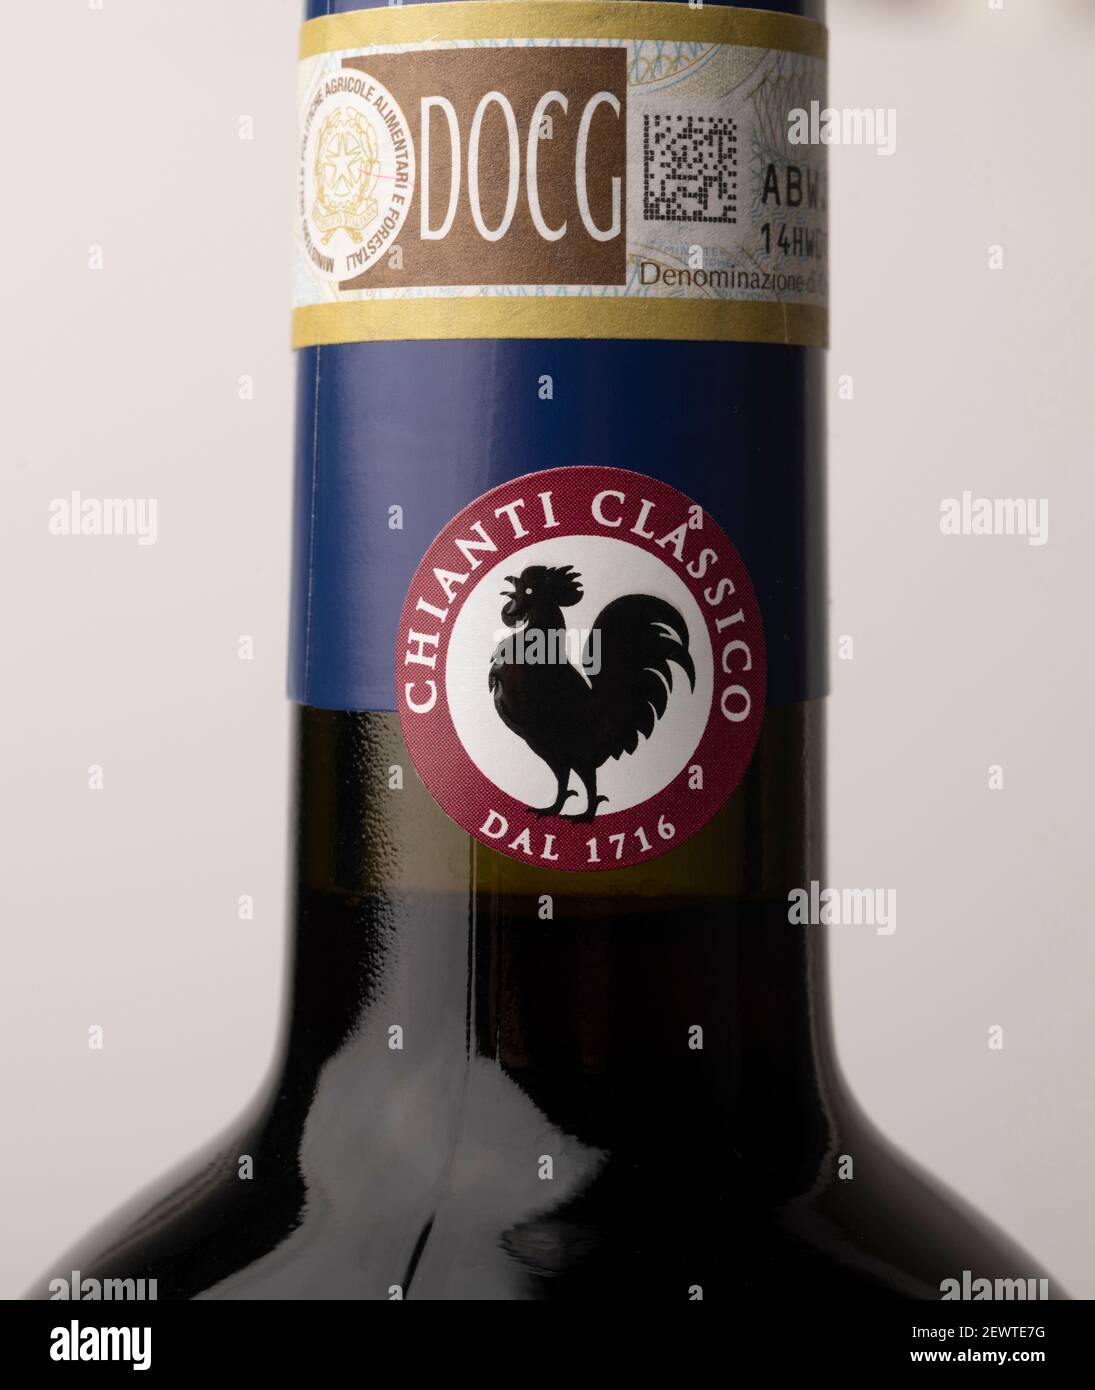 2016 Lornano Chianti Classico wine bottle label Stock Photo